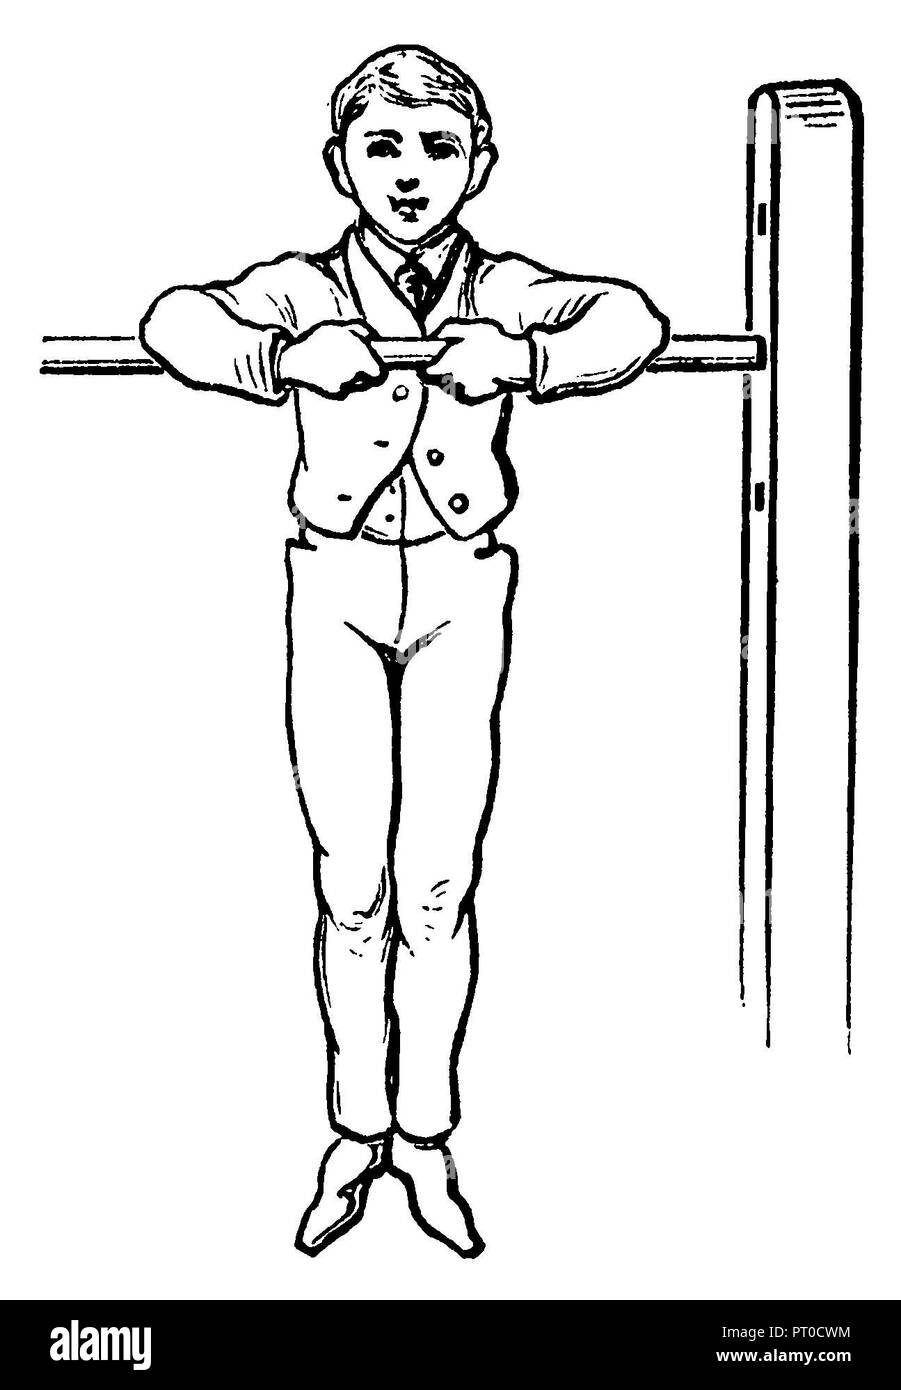 Ginnastica, esercizi di stretching: braccio superiore pendio di fronte con la presa delle mani, 1890 Foto Stock